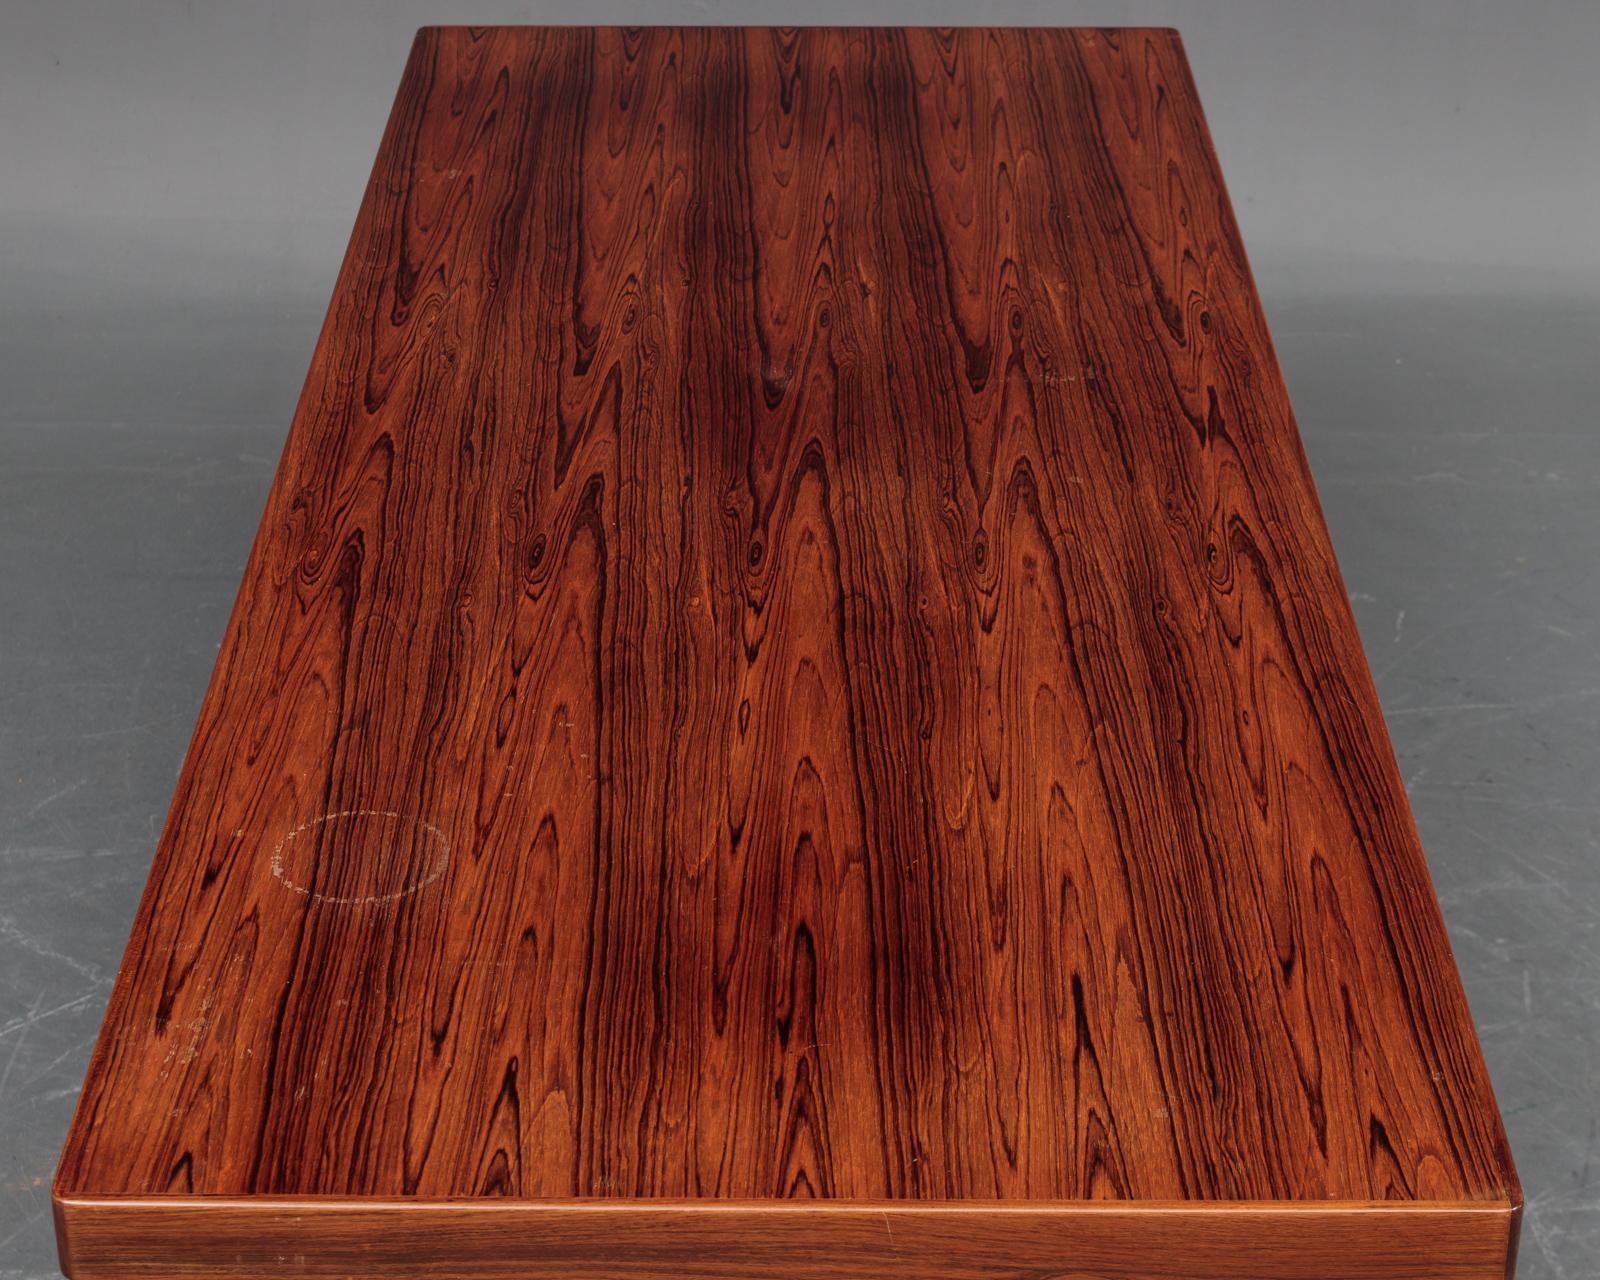 Table basse danoise en bois de rose de qualité, fabriquée par un fabricant de meubles danois. Excellent état restauré par des professionnels. Le dessus a été refait et la marque d'eau a été enlevée depuis les photos.